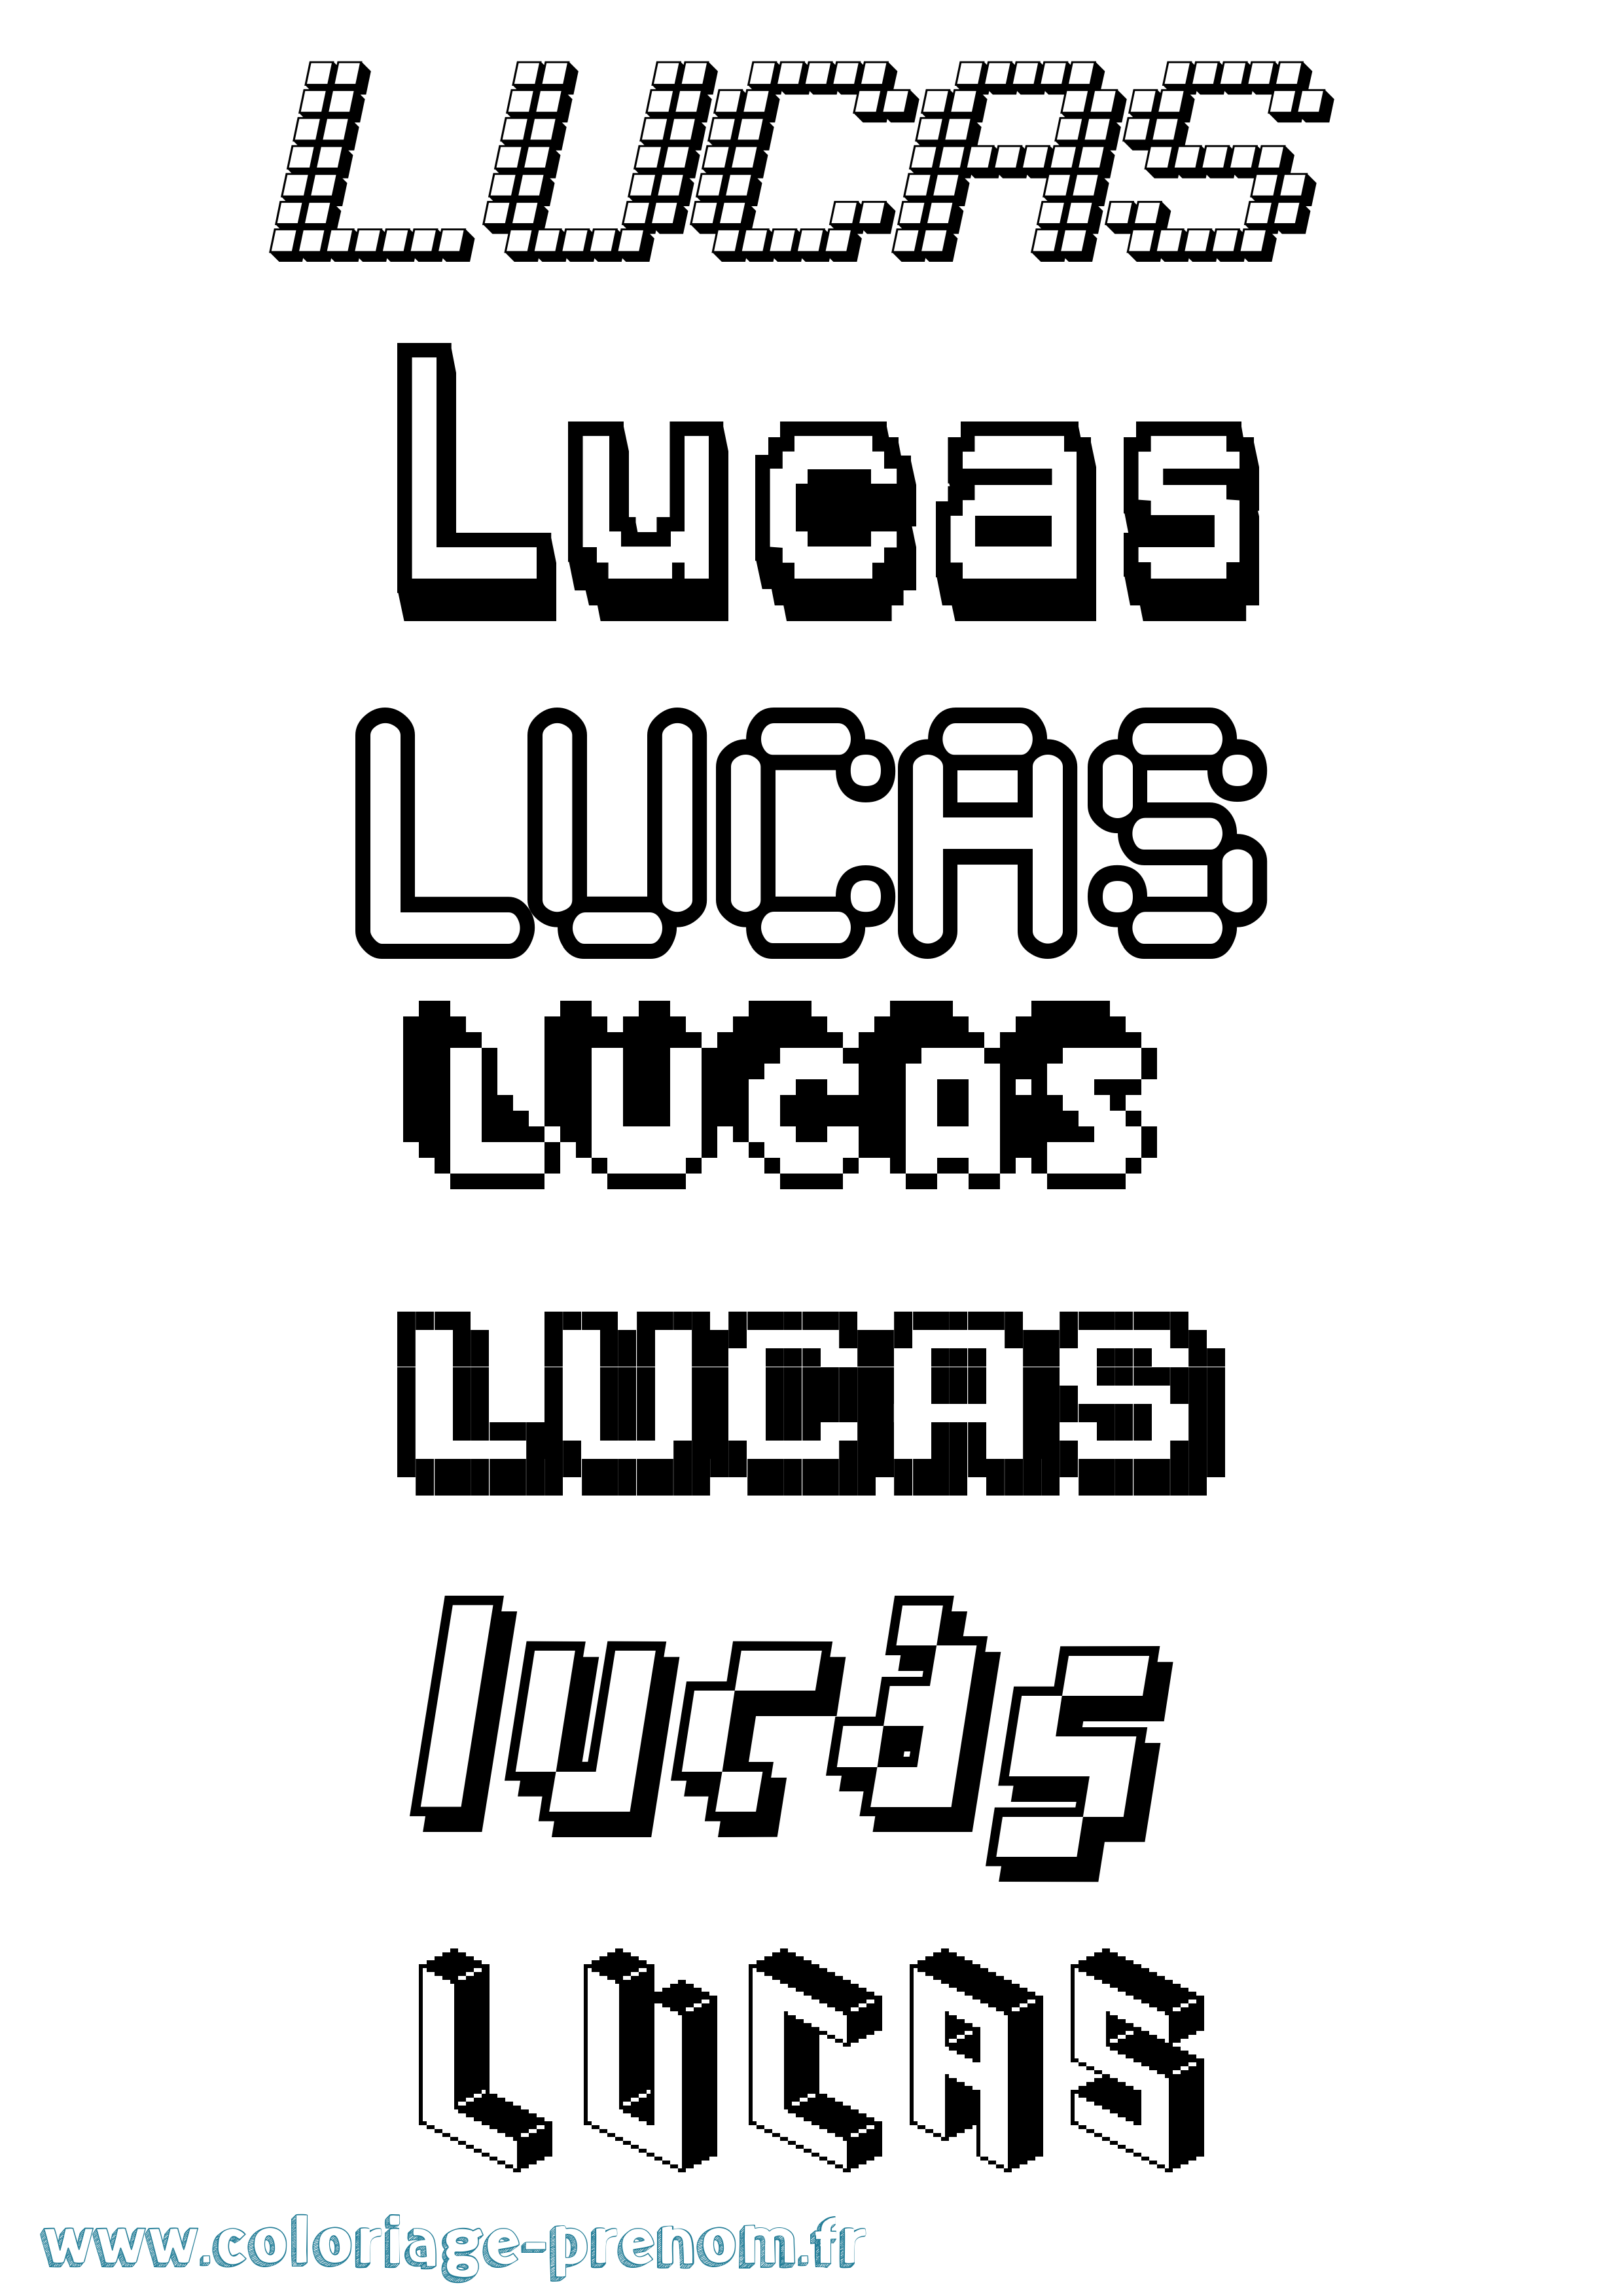 Coloriage prénom Lucas Pixel